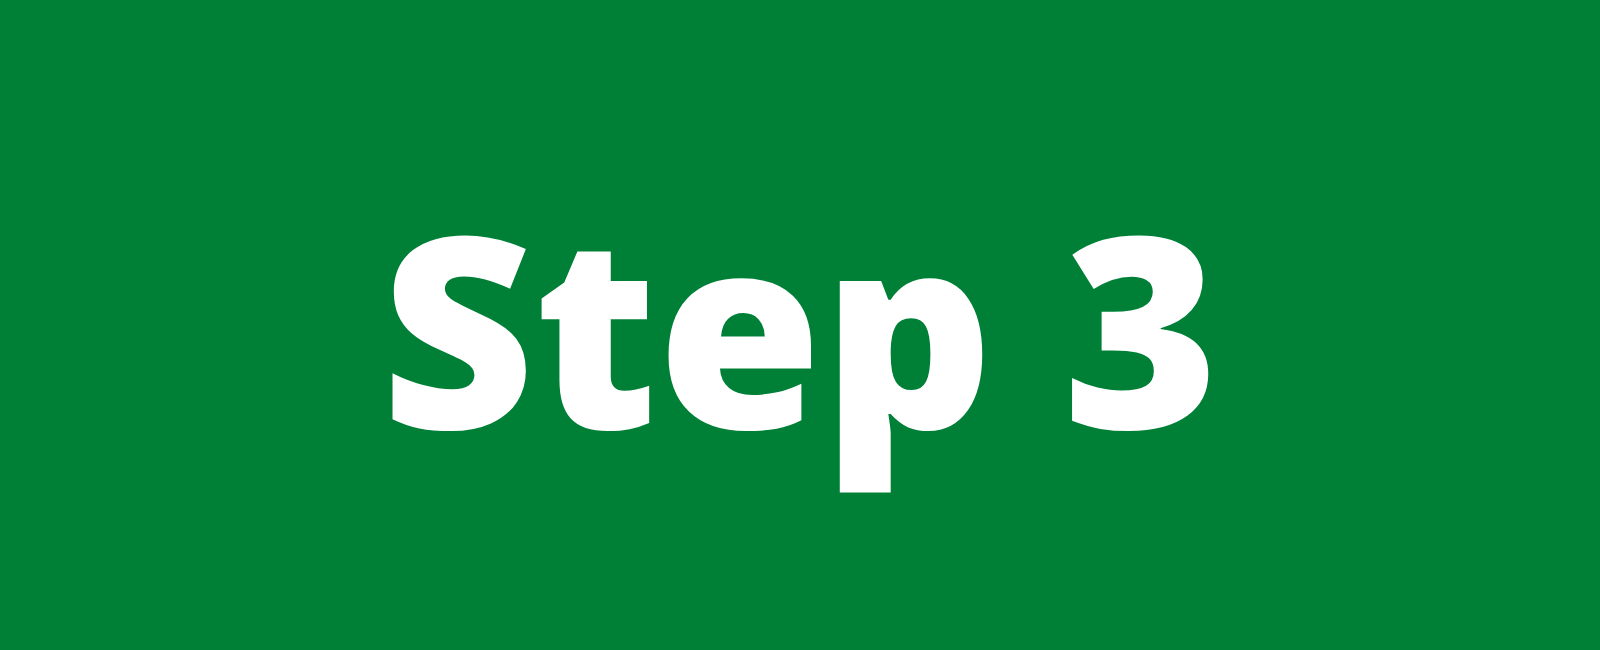 Words "Step 3"